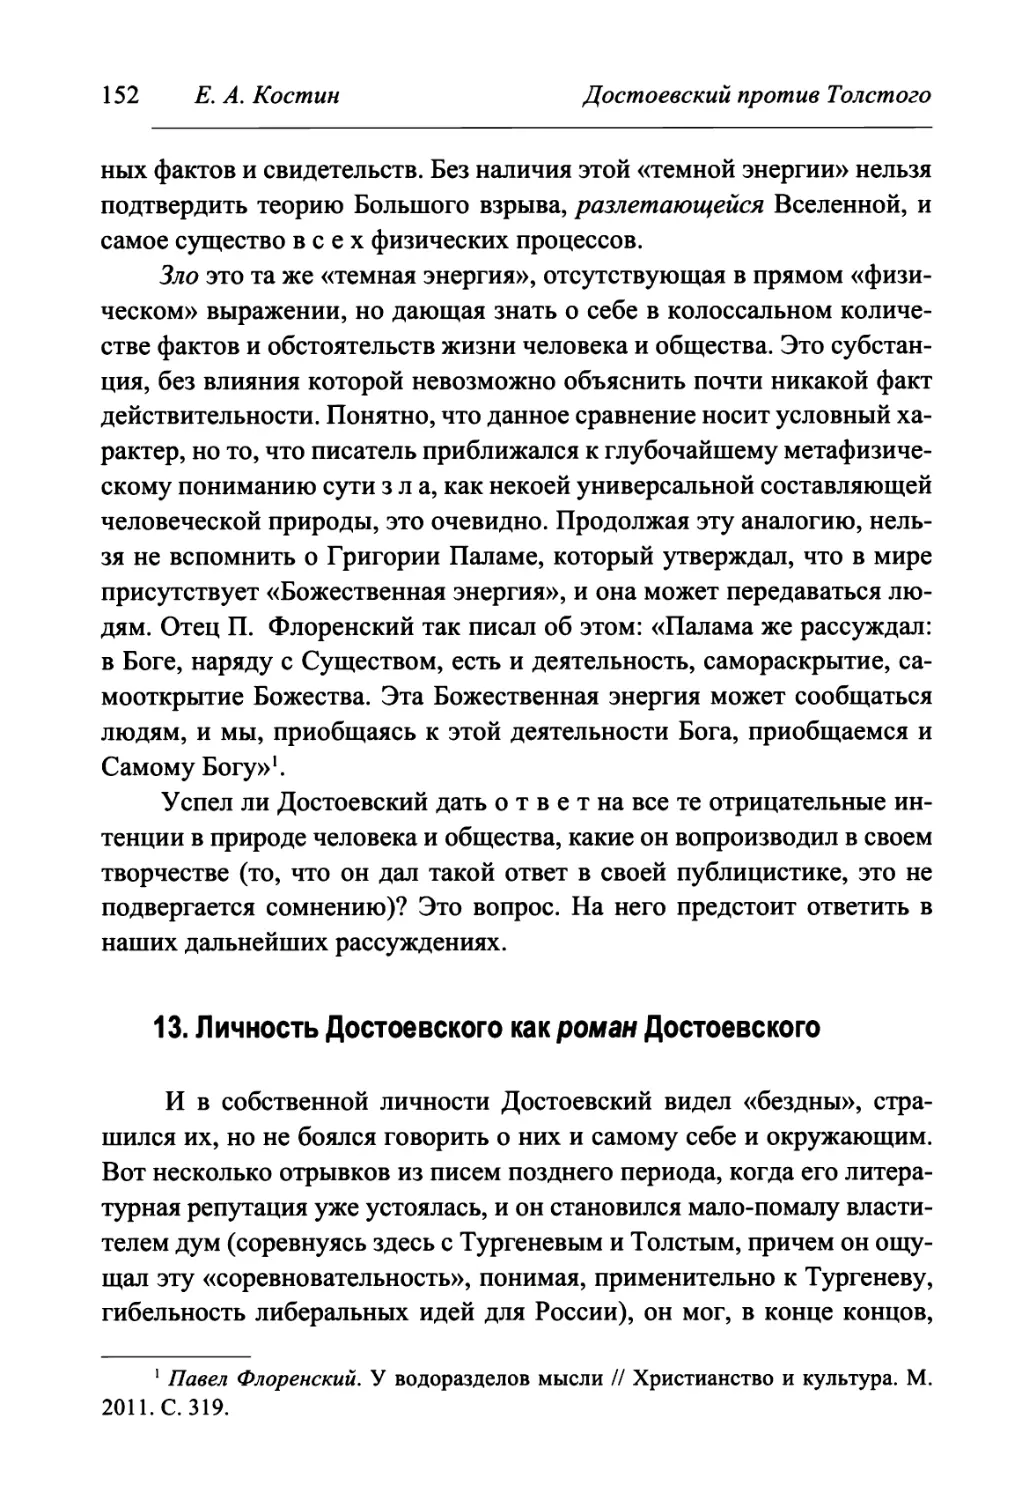 13. Личность Достоевского как роман Достоевского